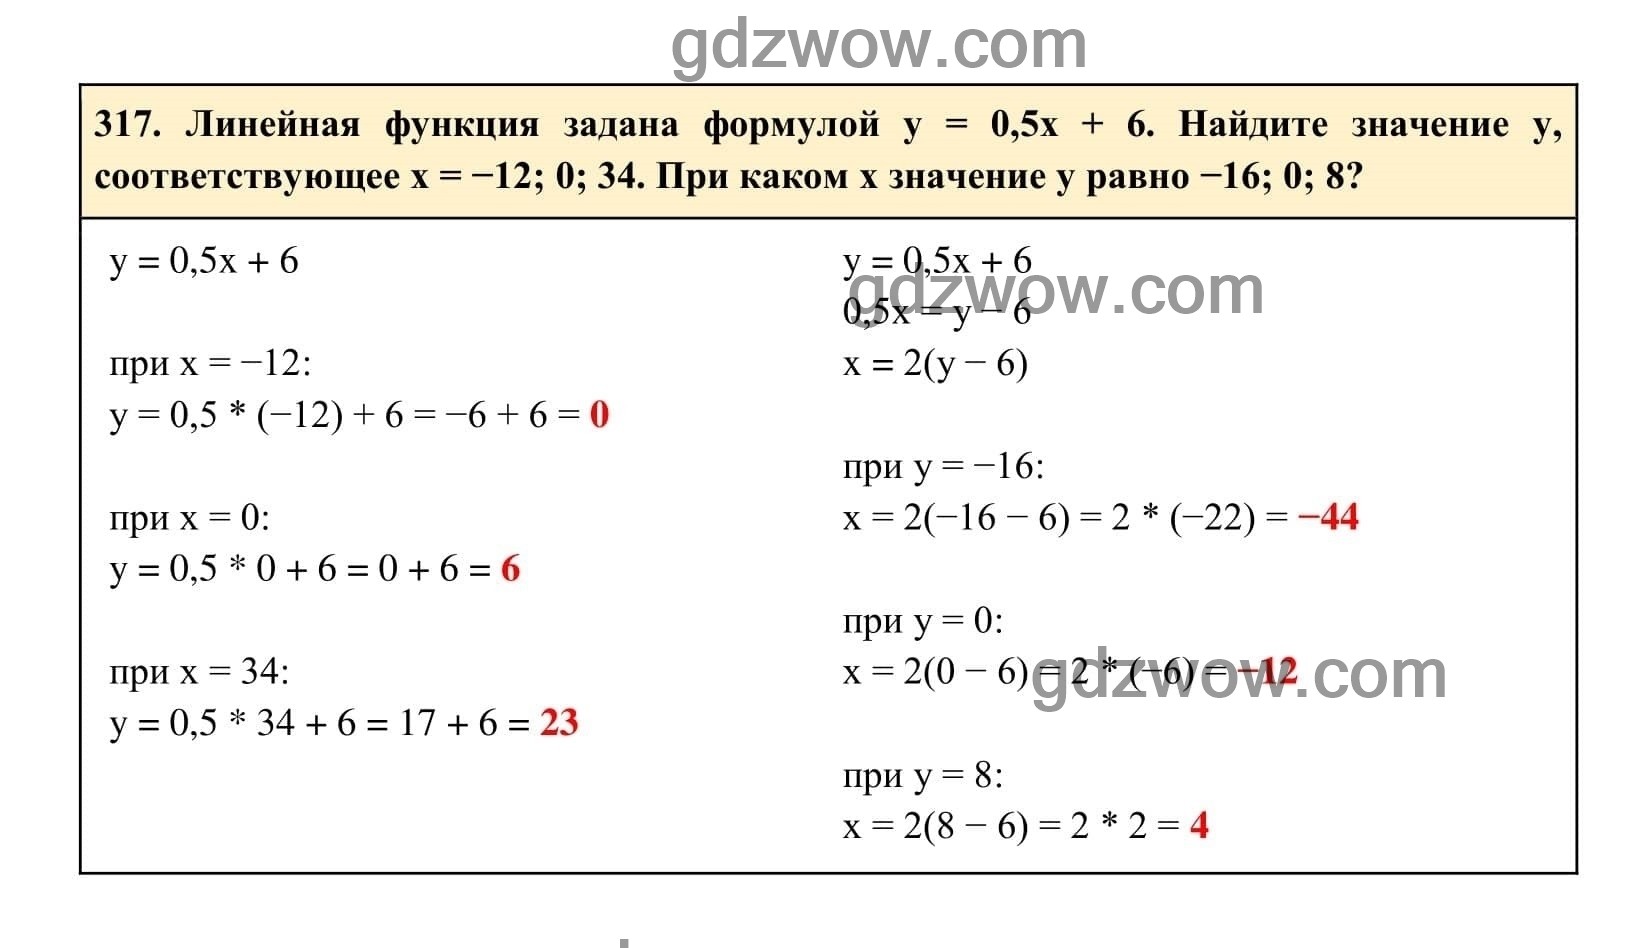 Упражнение 317 - ГДЗ по Алгебре 7 класс Учебник Макарычев (решебник) - GDZwow